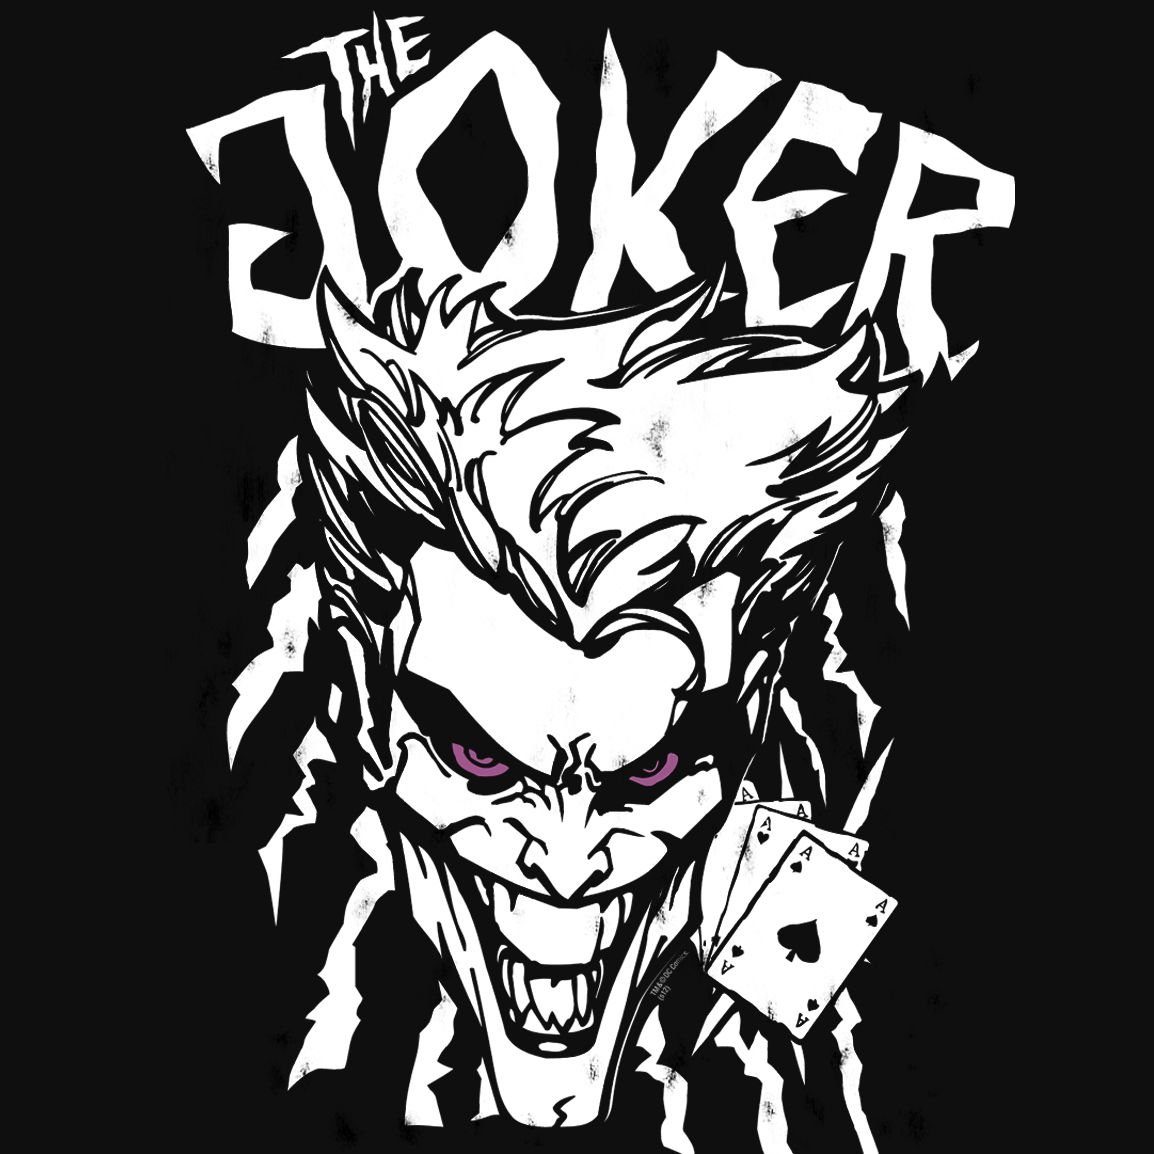 The tollem T-Shirt mit Joker Joker-Print - LOGOSHIRT Aces